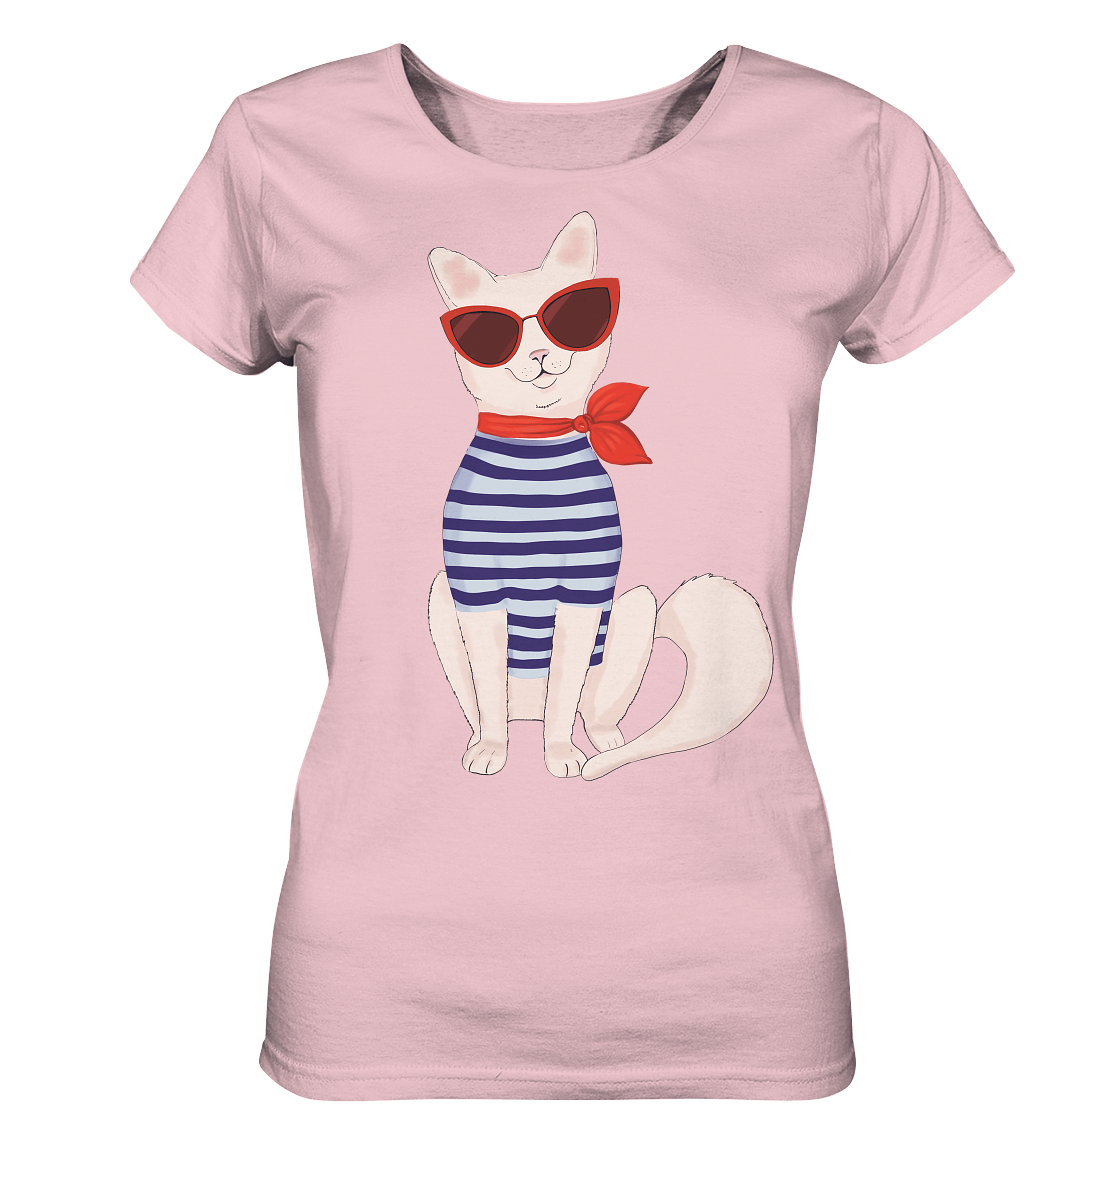 Damen T-Shirt mit Fashion Katze mit Matrosen Hemd und Roter Sonnenbrille von Bloominic